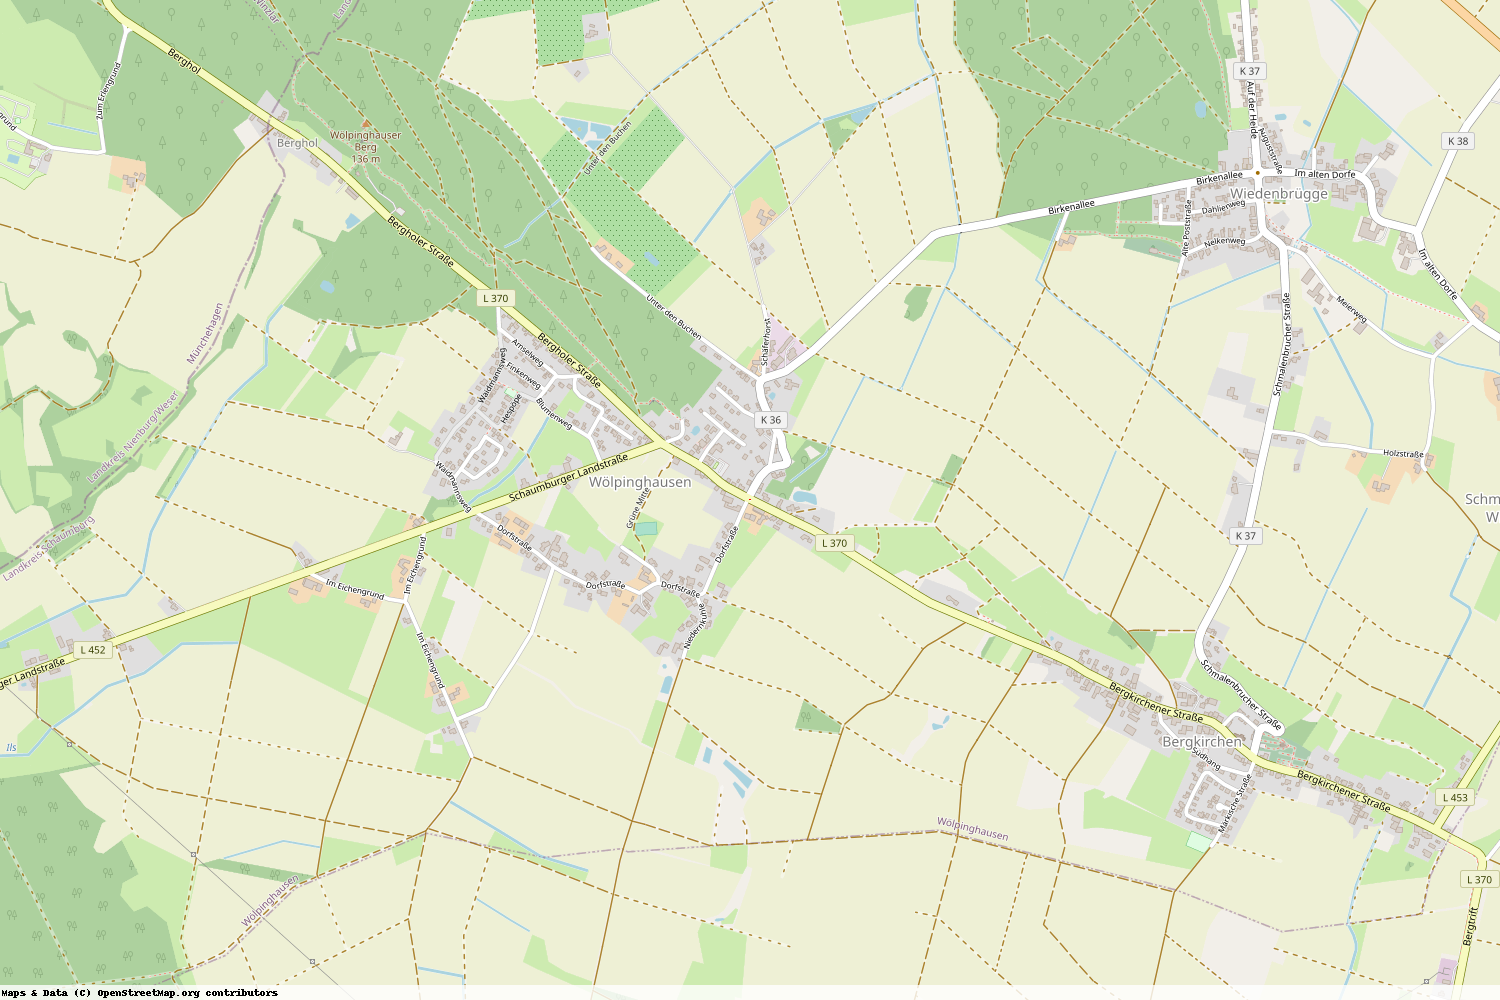 Ist gerade Stromausfall in Niedersachsen - Schaumburg - Wölpinghausen?